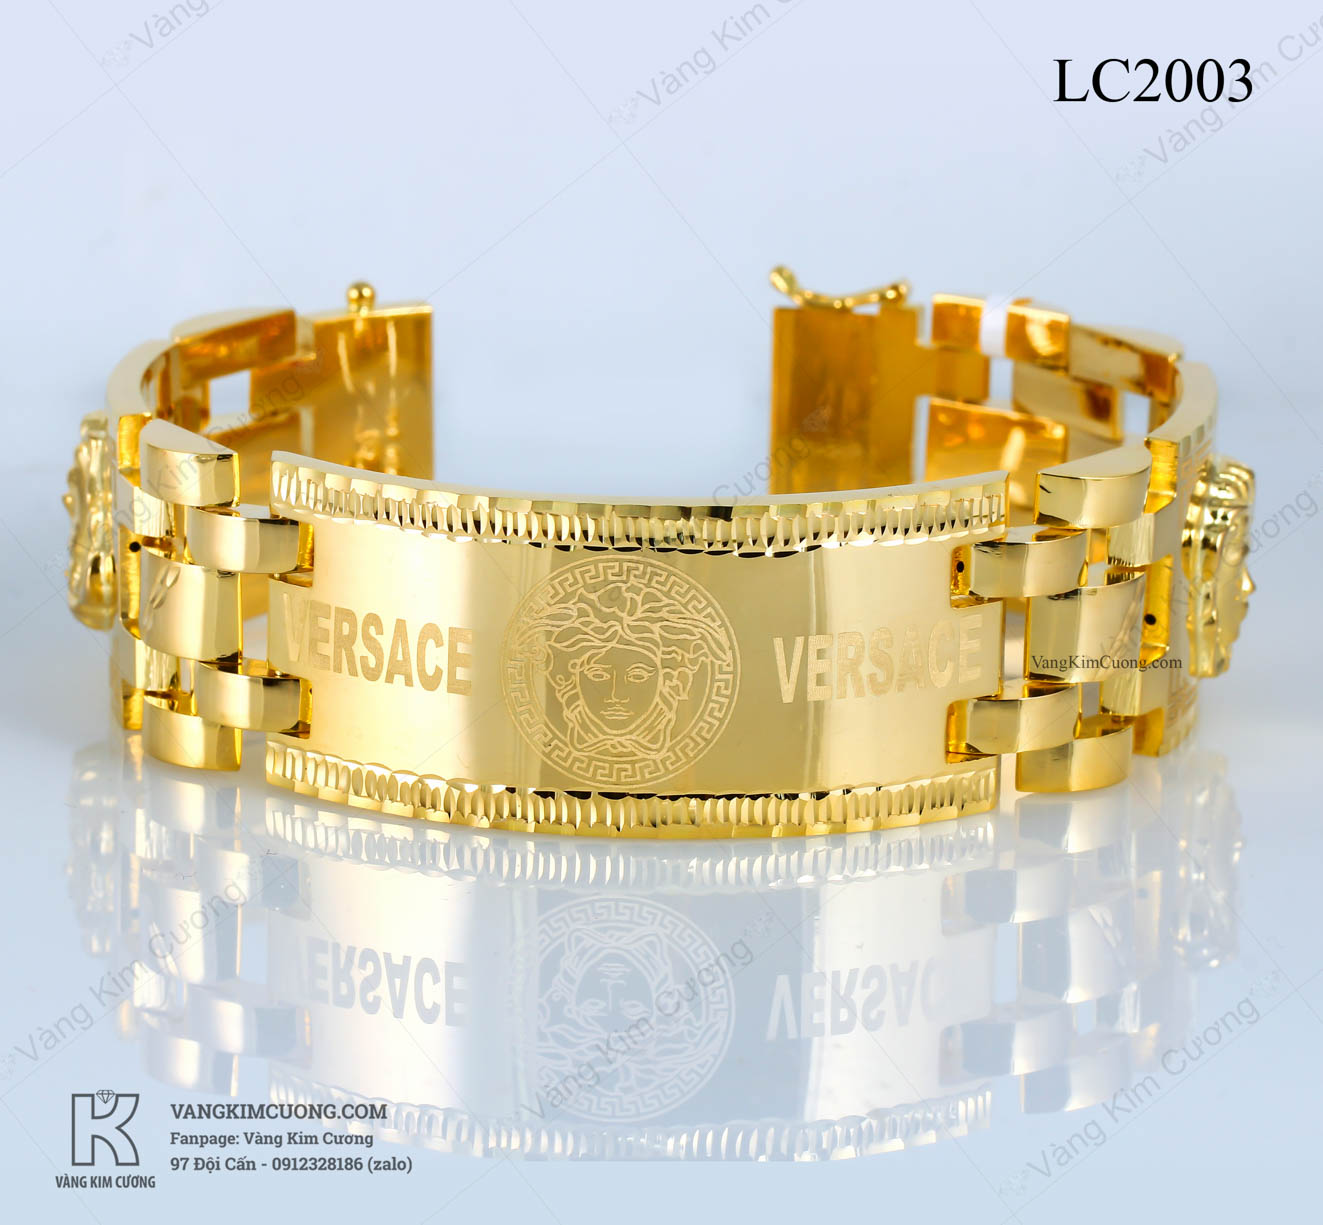 Lắc tay nam vàng 18k đẹp và hiện đại - Chiếc lắc tay nam vàng 18k cao cấp LC2003 đến từ Phú Quý Jewelry sẽ làm hài lòng những khách hàng khó tính nhất. Với thiết kế hiện đại và đẹp mắt, chiếc lắc tay này sẽ là trung tâm của phong cách của bạn.